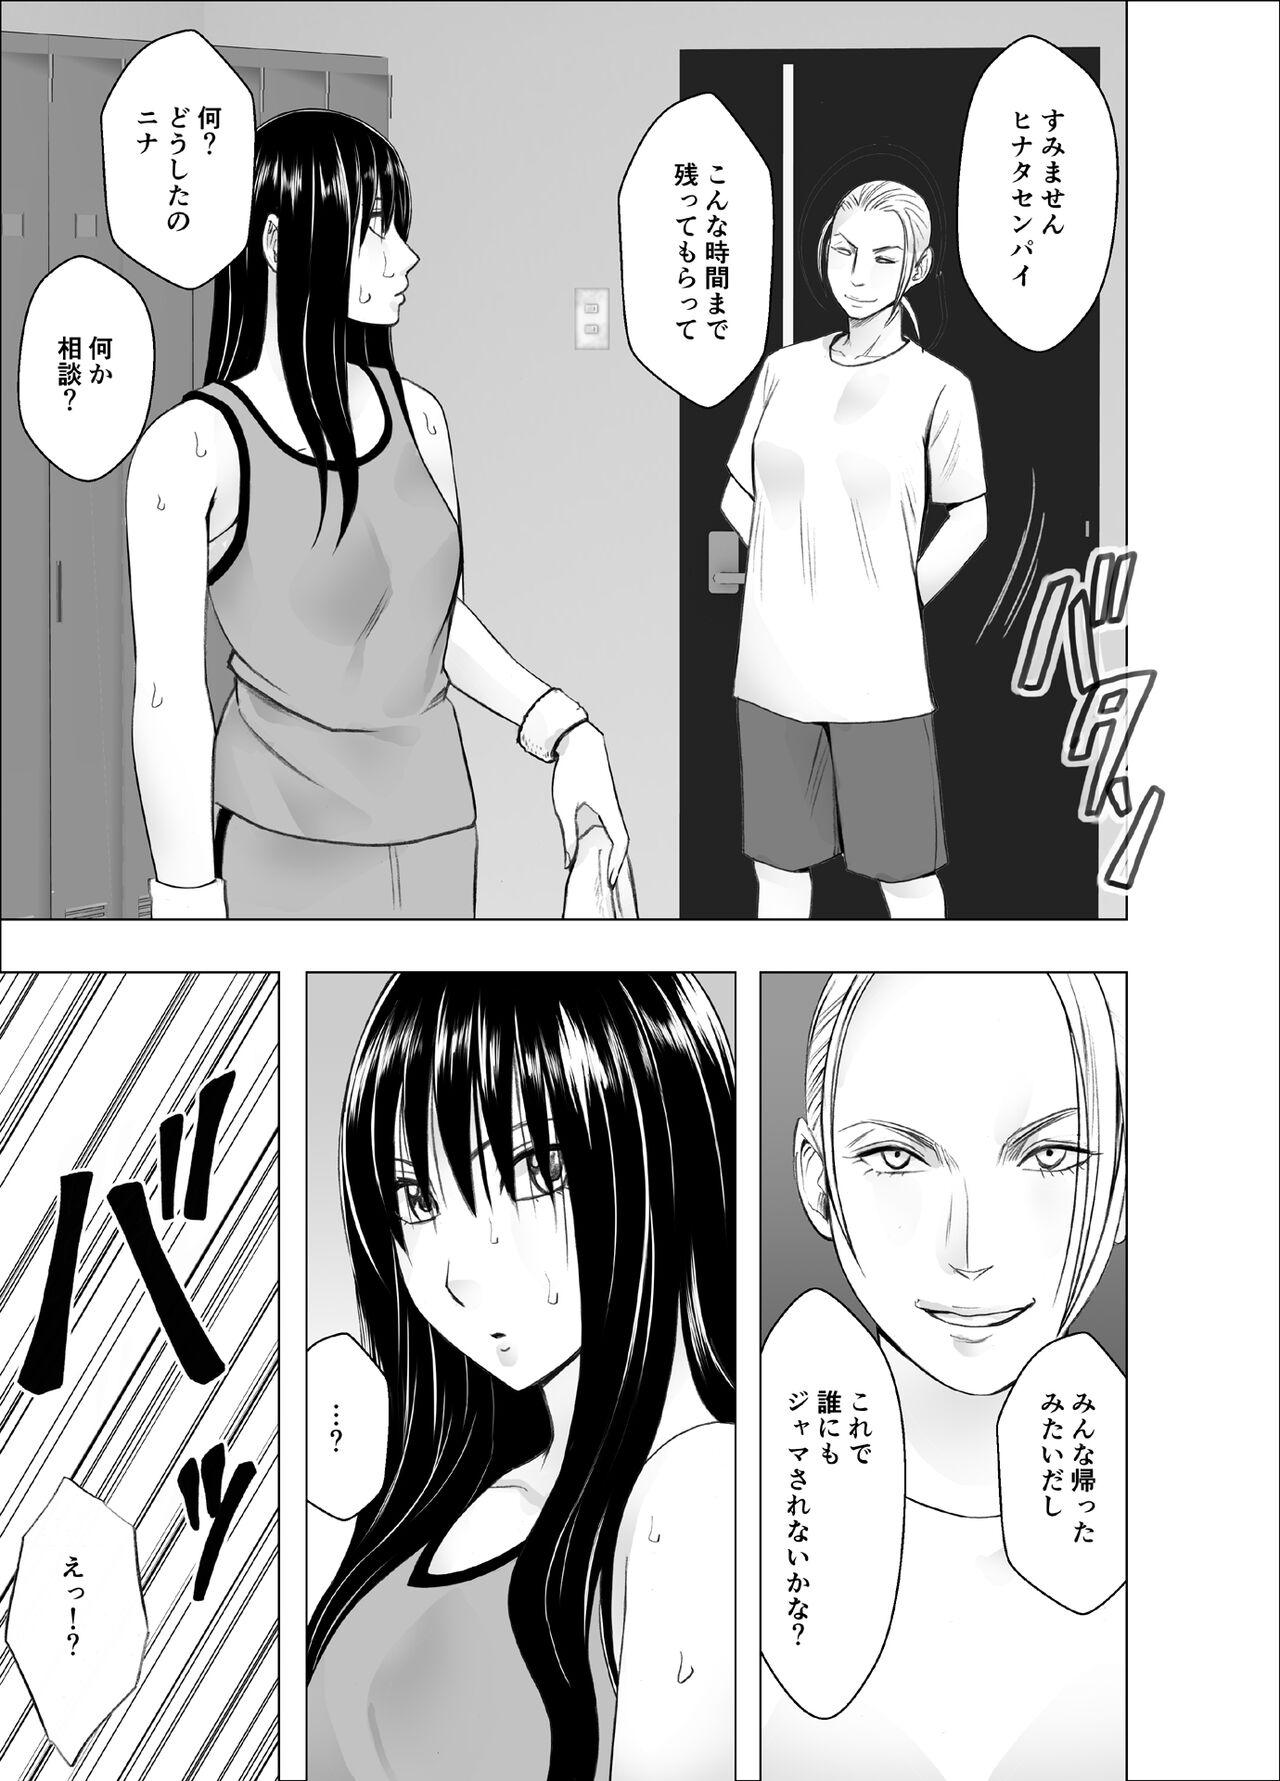 Indo rezu no ryugakusei ni isyuukan moteasobateta watashi - Original 4some - Page 5